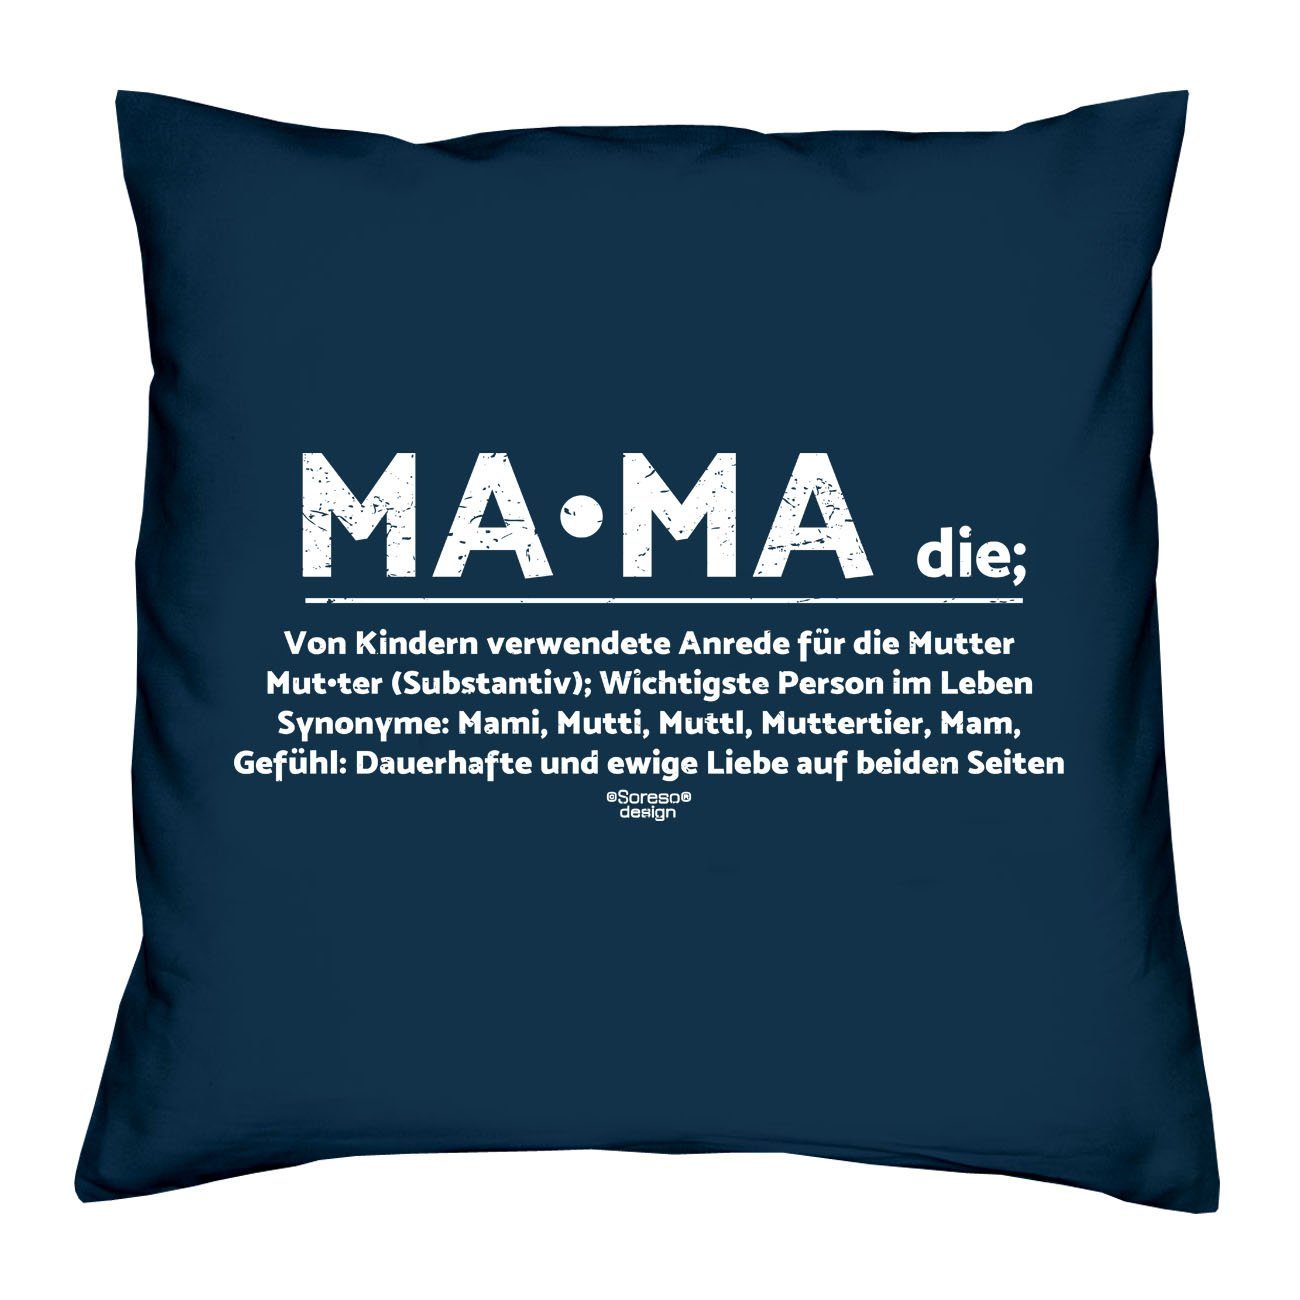 Soreso® Dekokissen Kissen Mama & Urkunde, Geschenkidee Weihnachtsgeschenk navy-blau